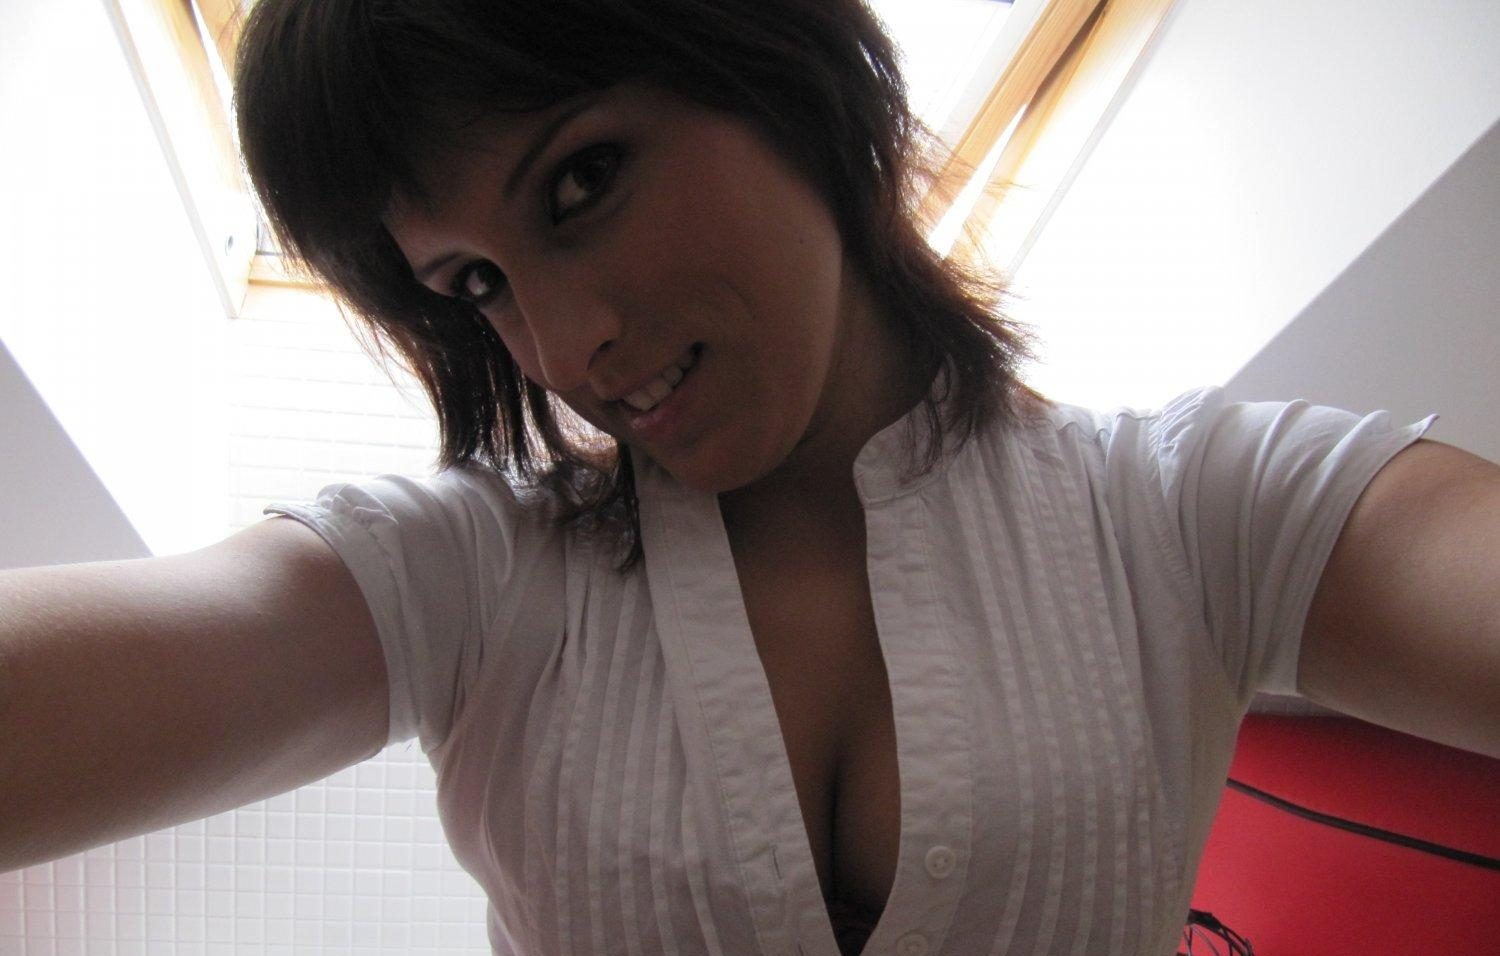 Nackt Selfies Sexting junge Frau Svenja